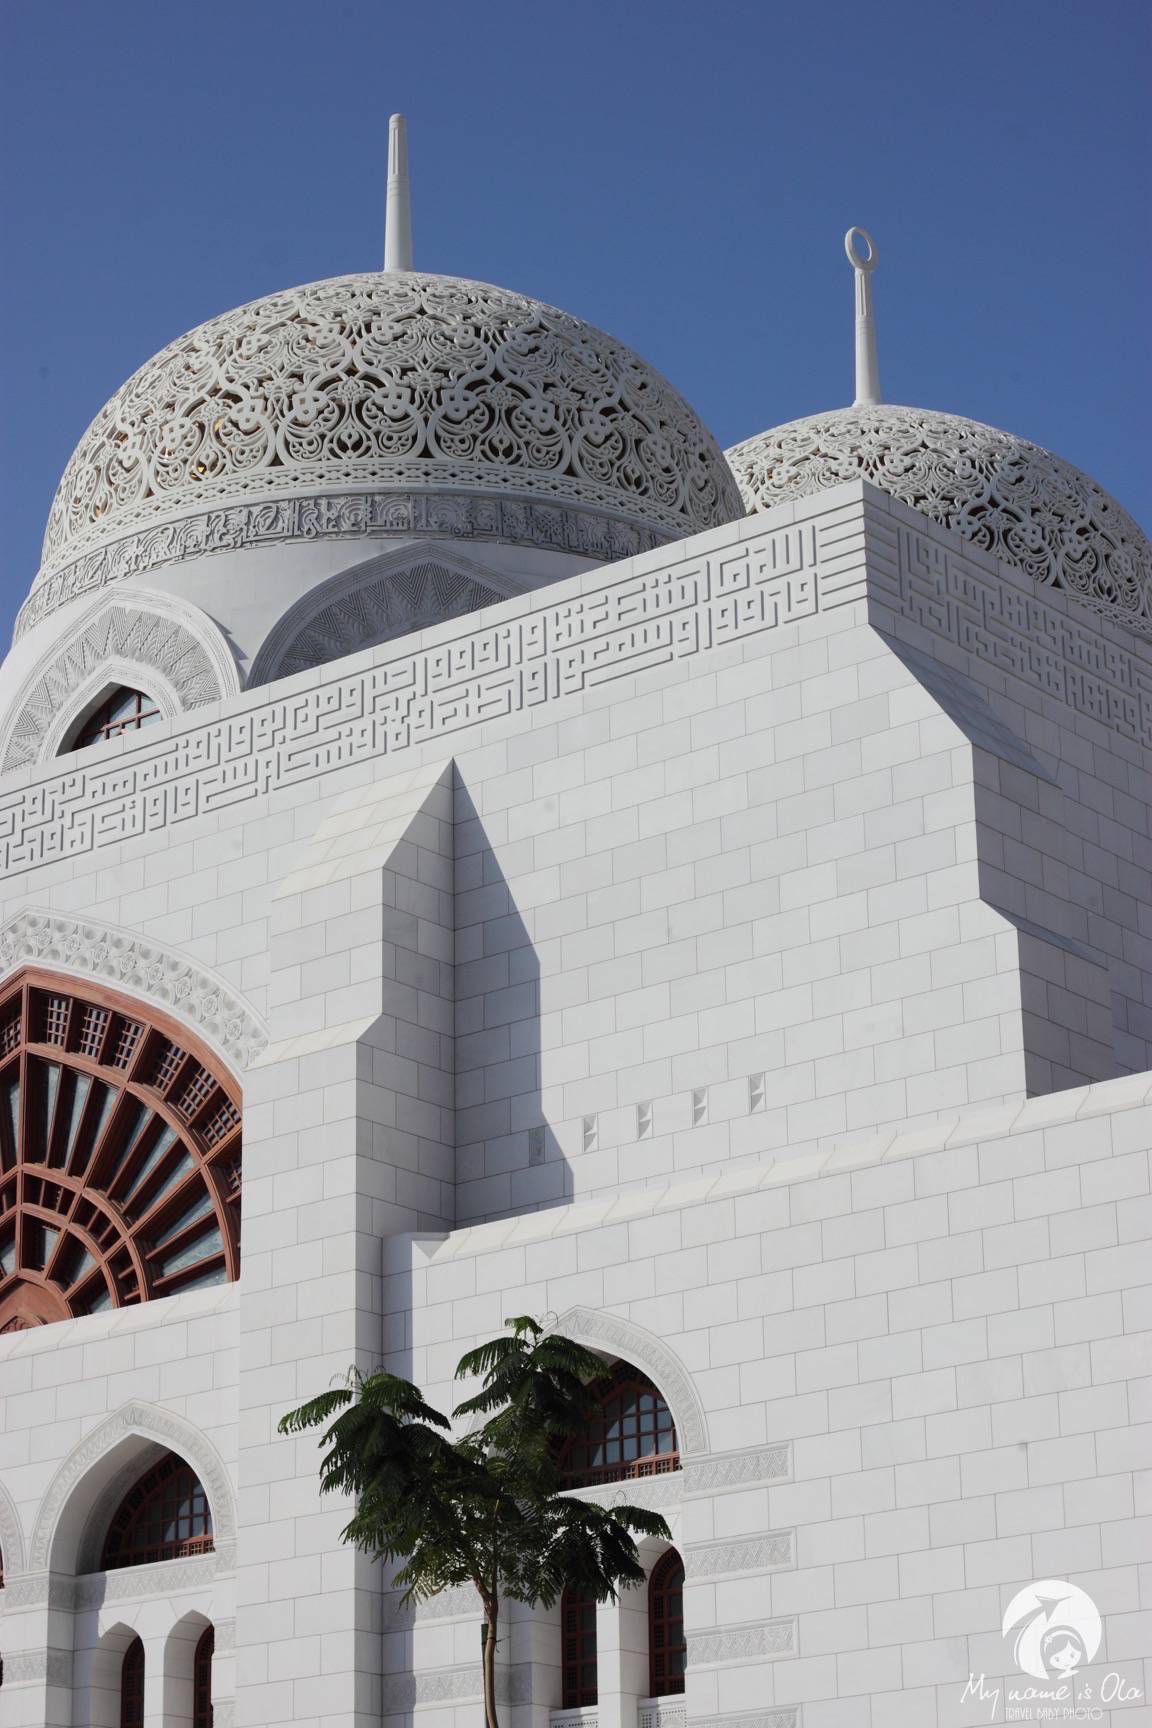 Mohammed Al Ameen Mosque Oman